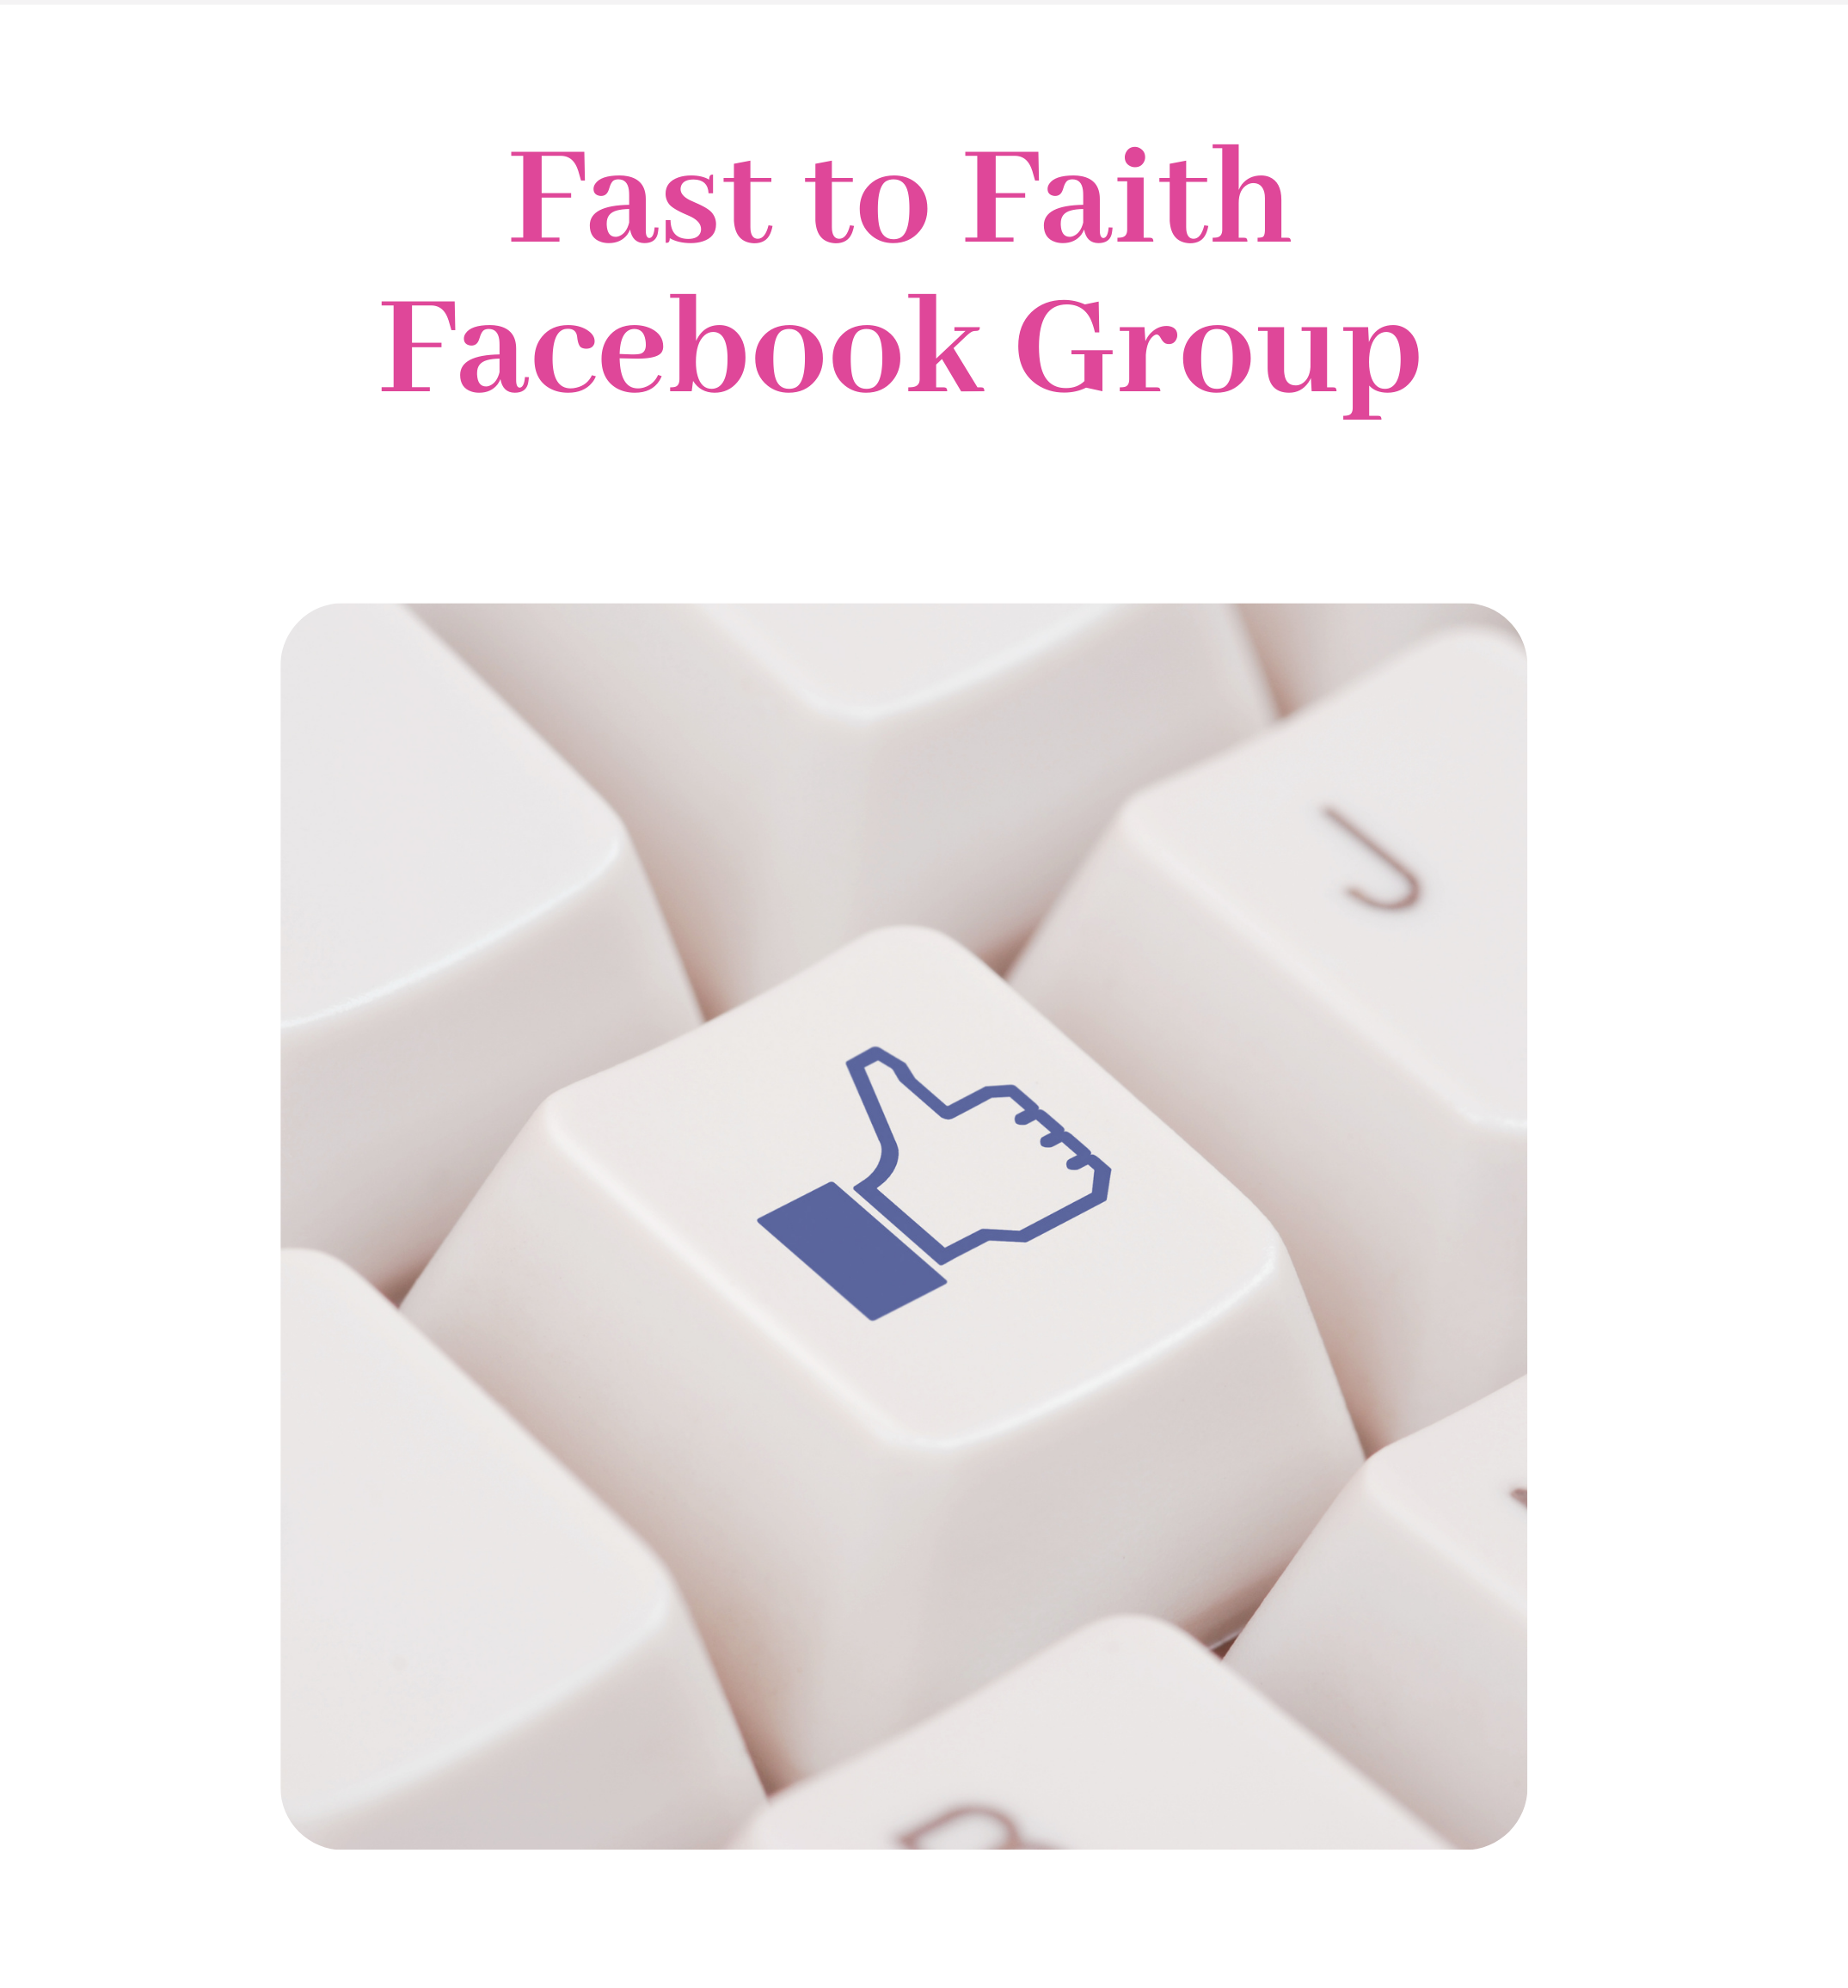 Fast to Faith Facebook Group